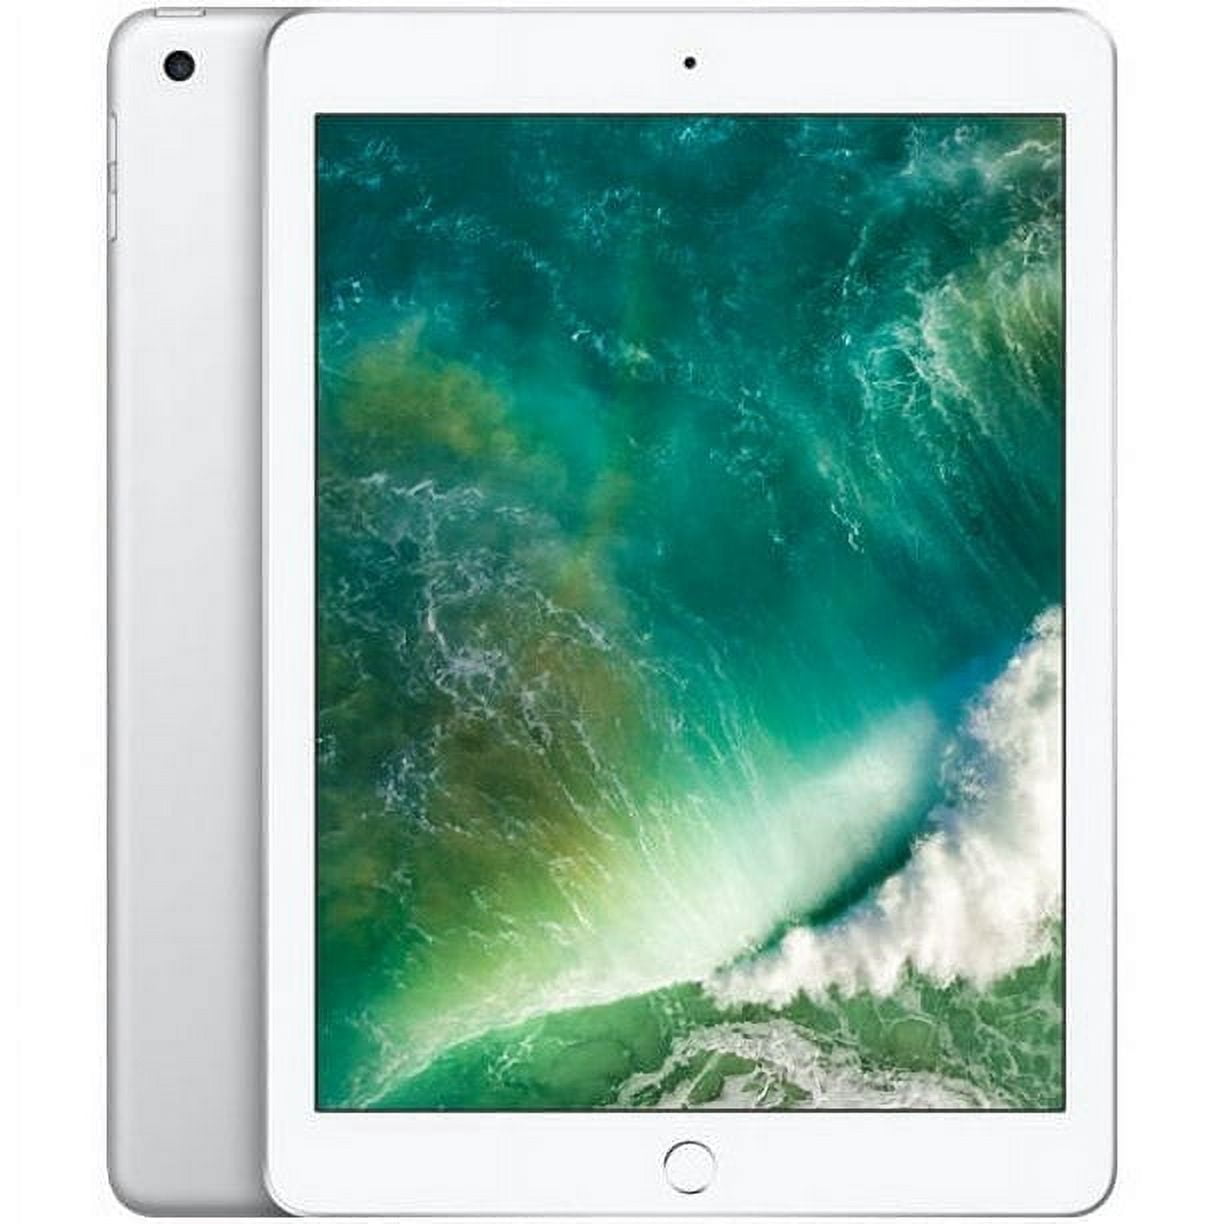 Apple iPad 5th Gen 32GB Wifi+Cellular A1823 MP252LL/A - Silver